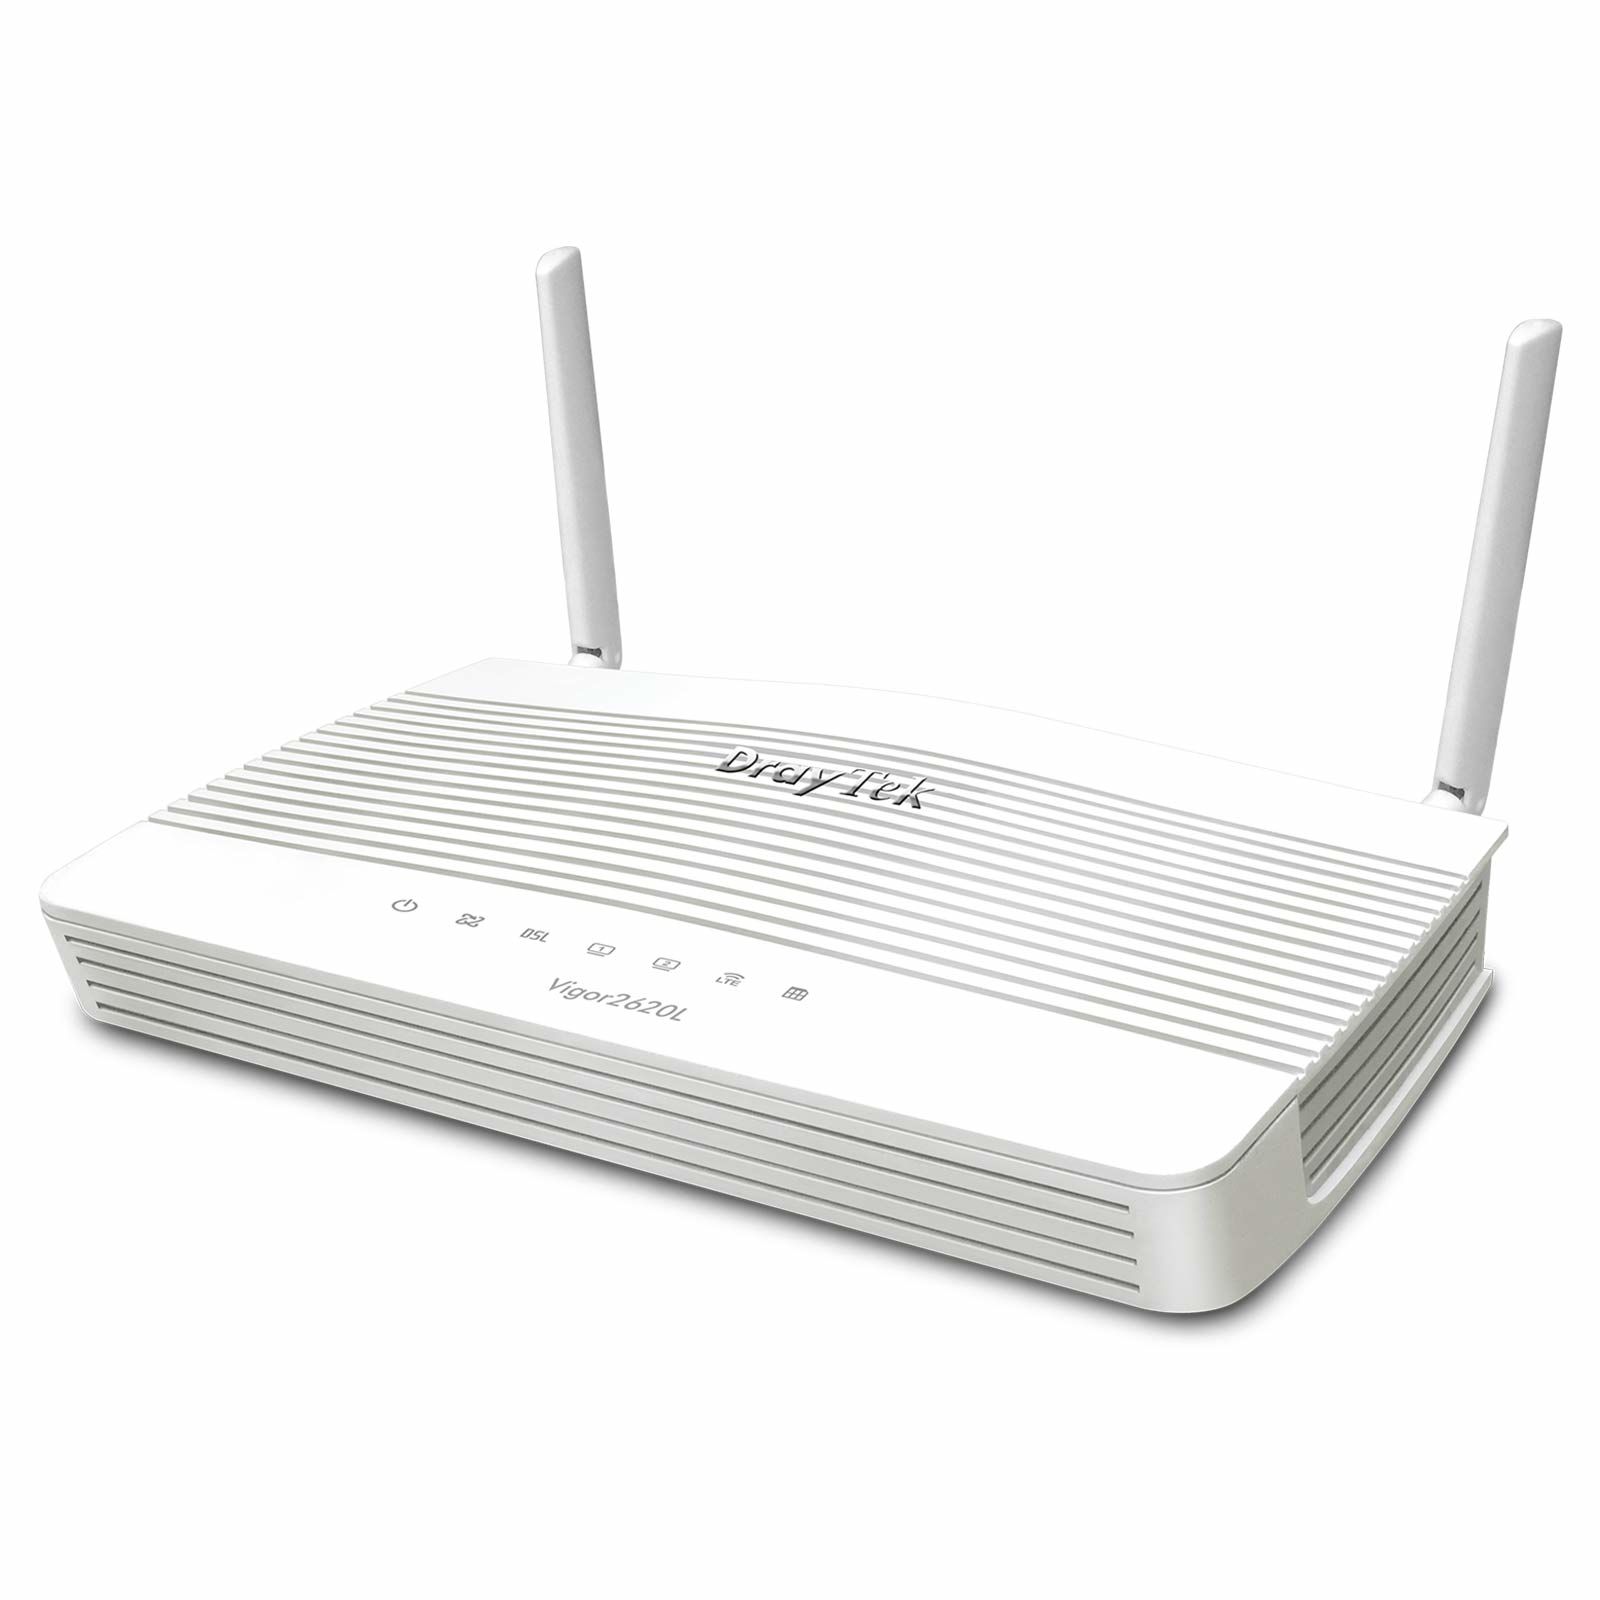 Draytek Vigor 2620L 4G/LTE ADSL2/VDSL2 VPN Router Modem